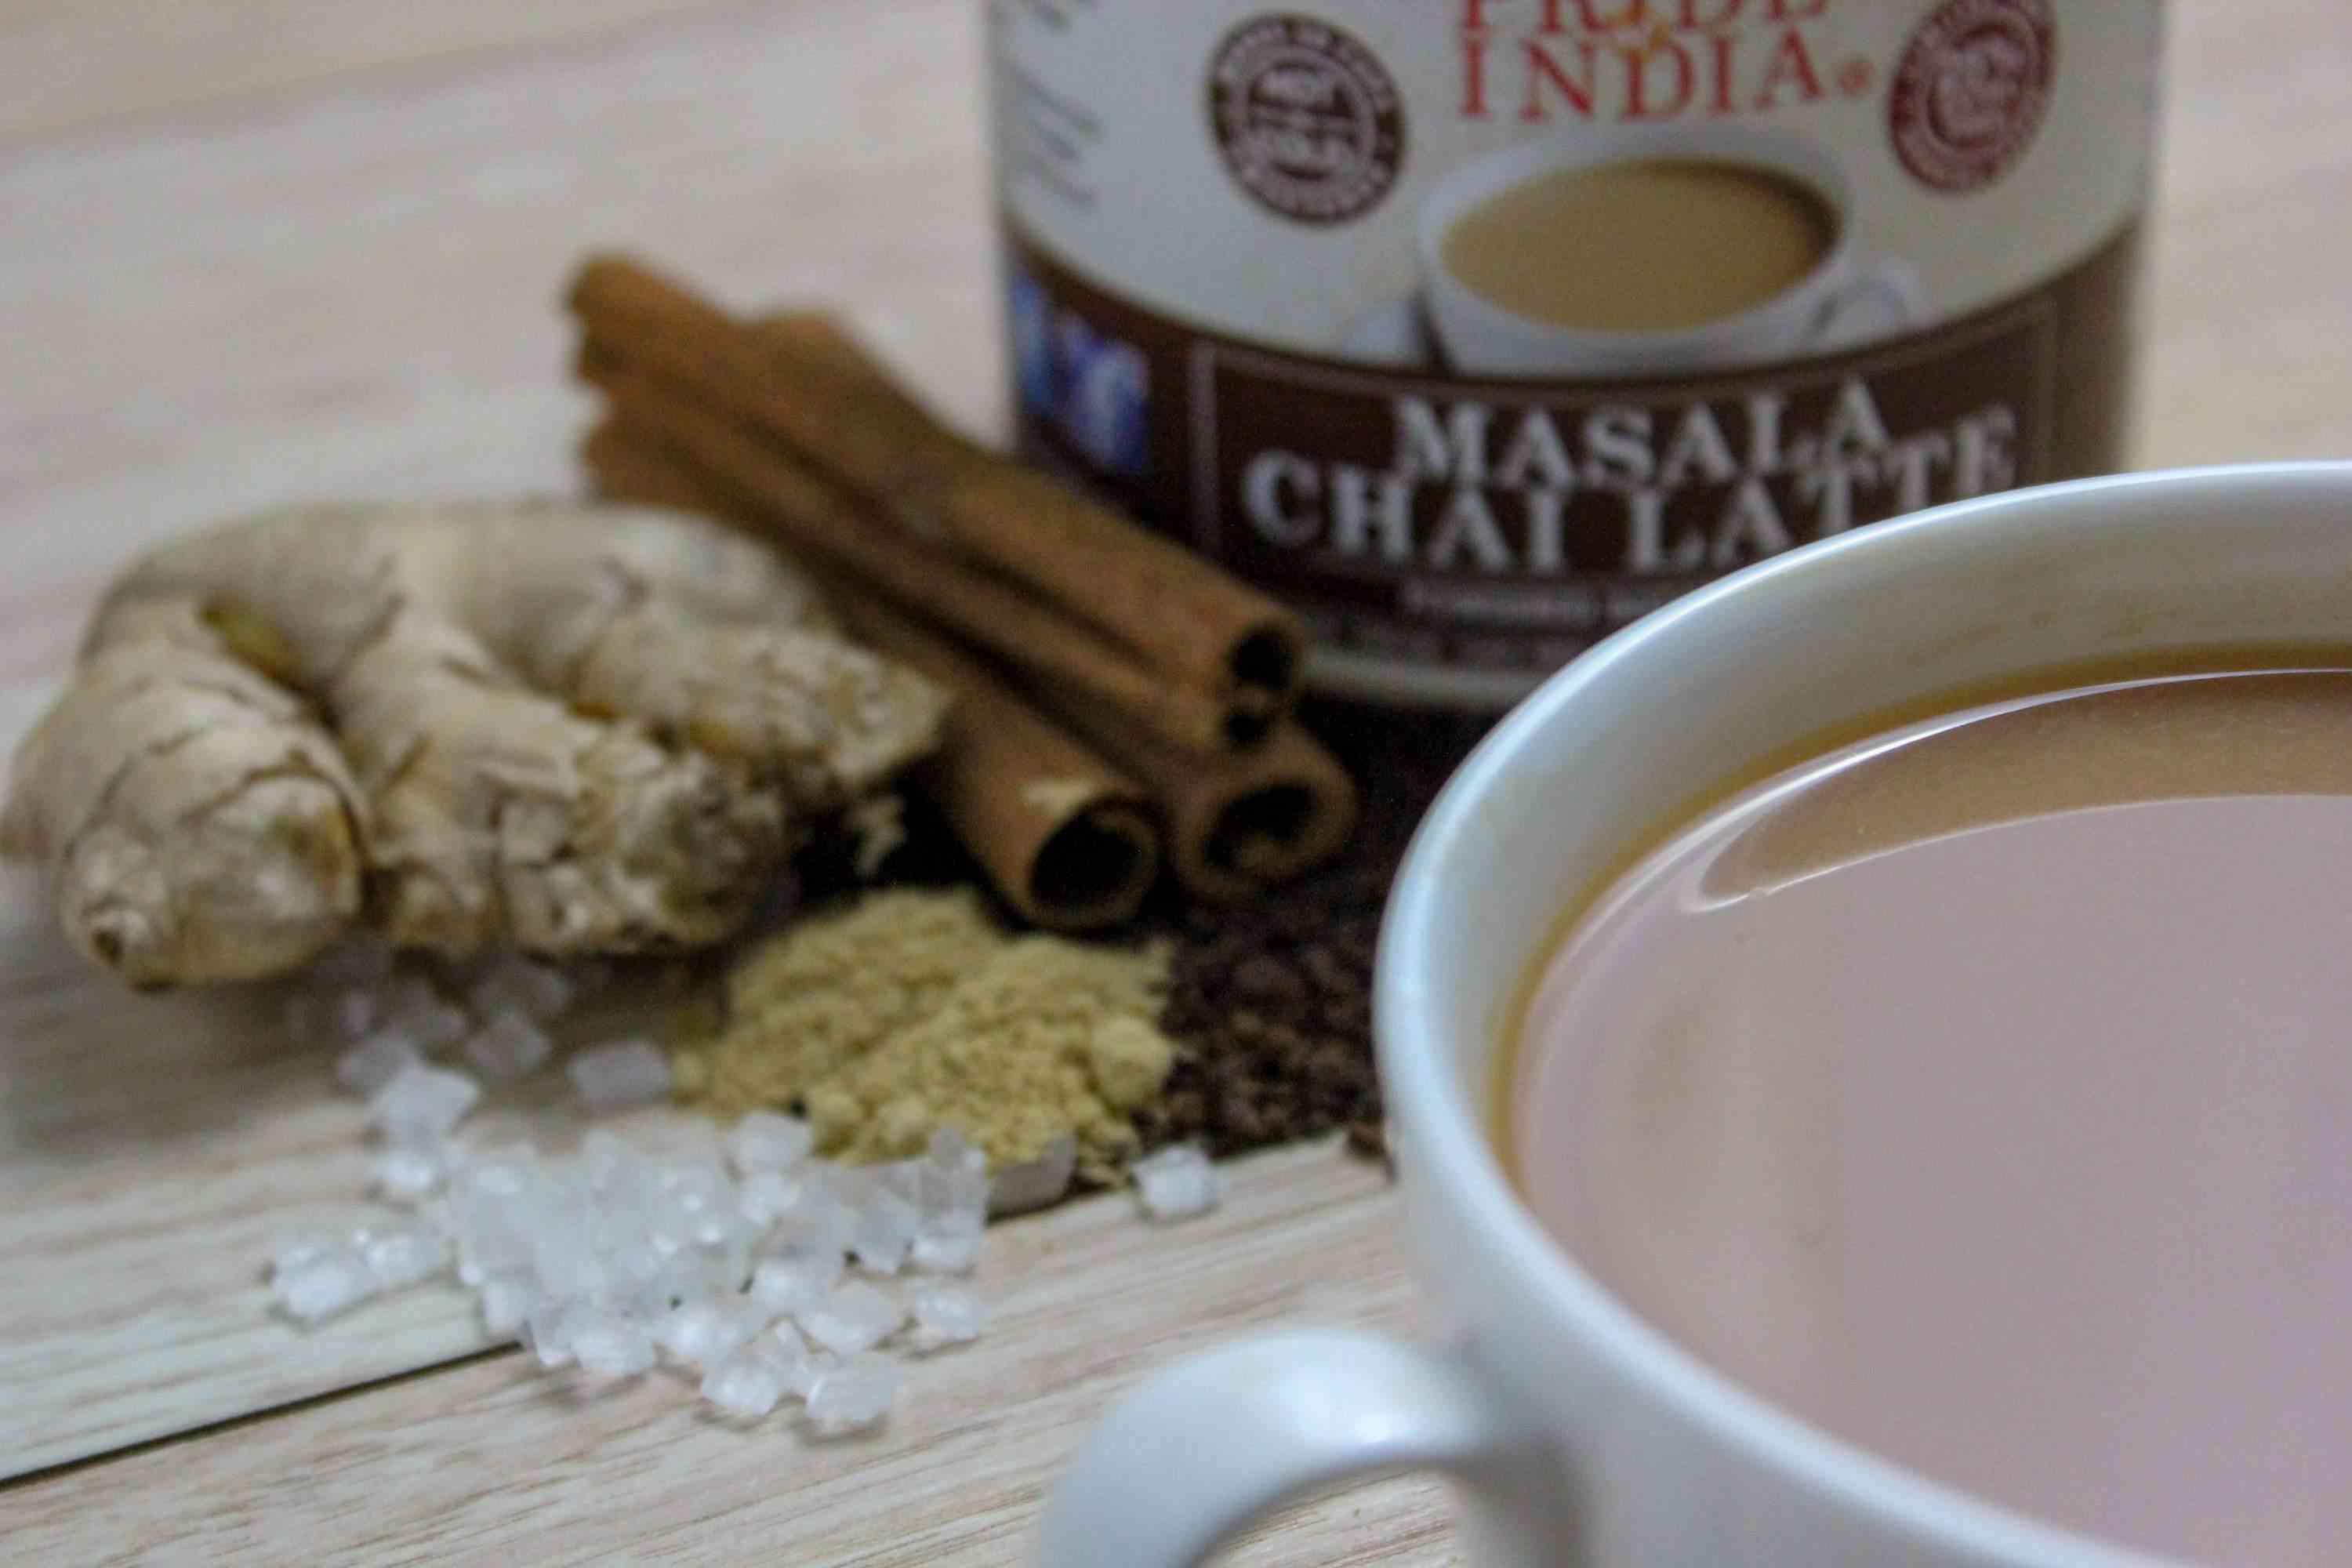 Masala chai latte v prášku - premix okamžitého čaje